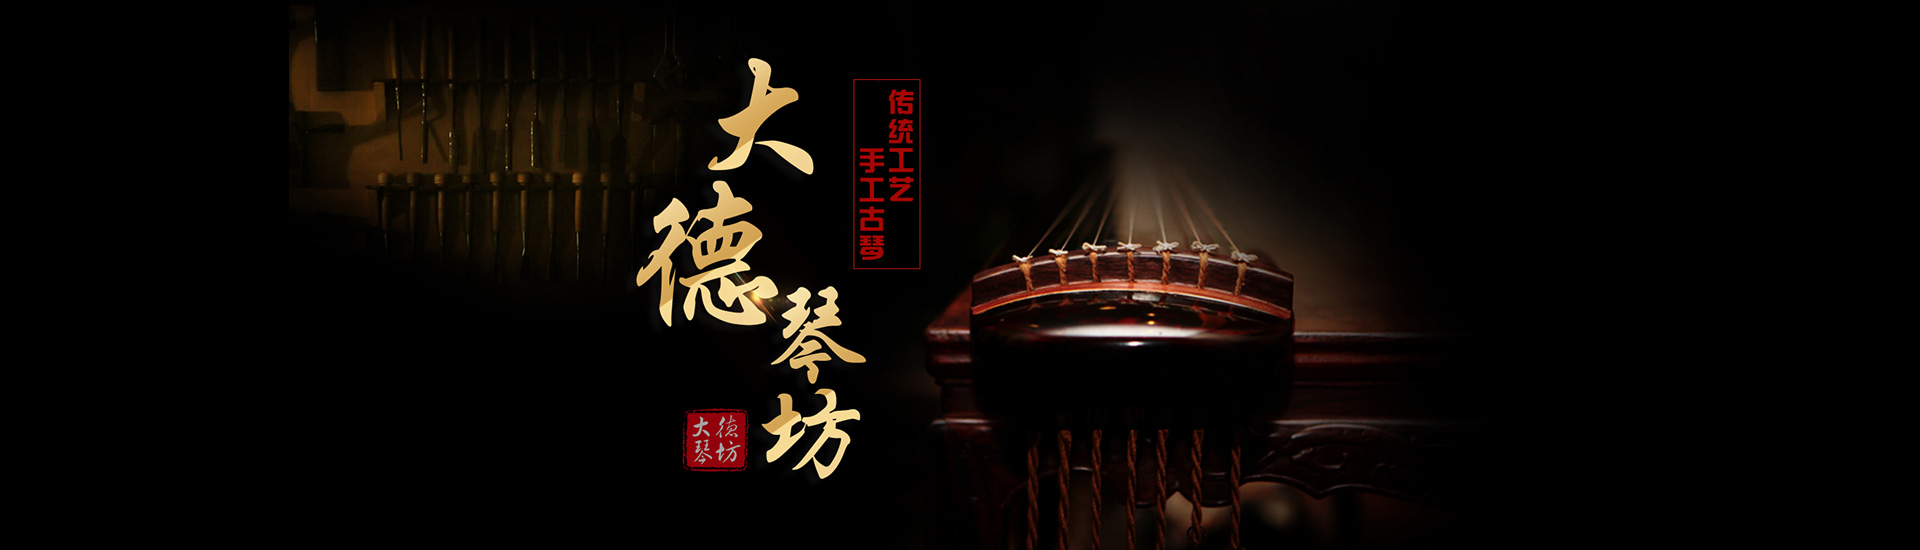 北京大德琴坊手工古琴